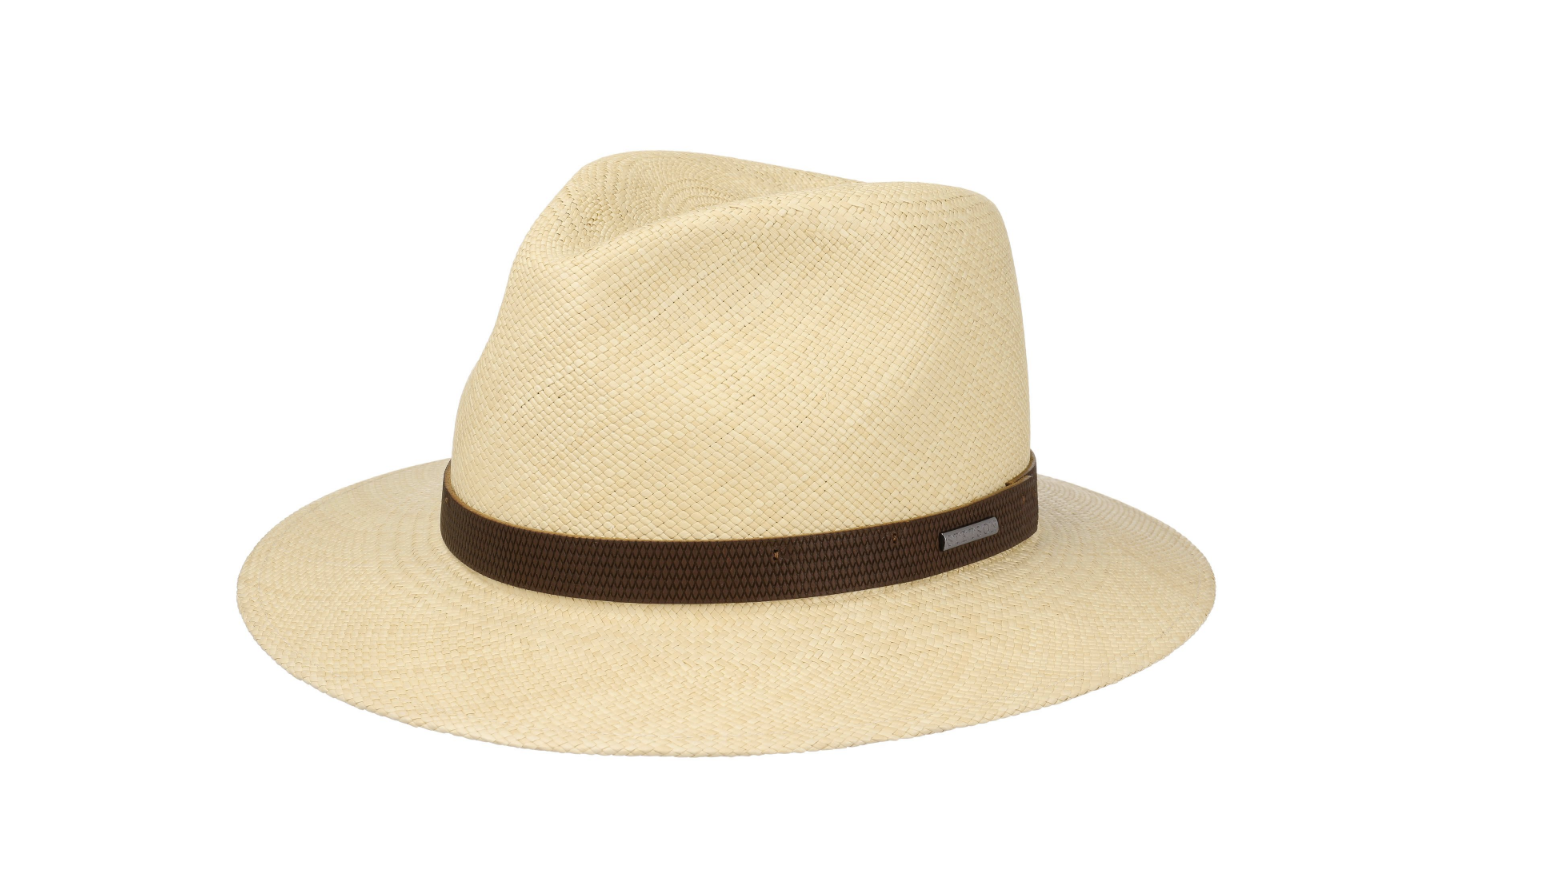 Copricapo per chi porta la barba: il cappello Panama